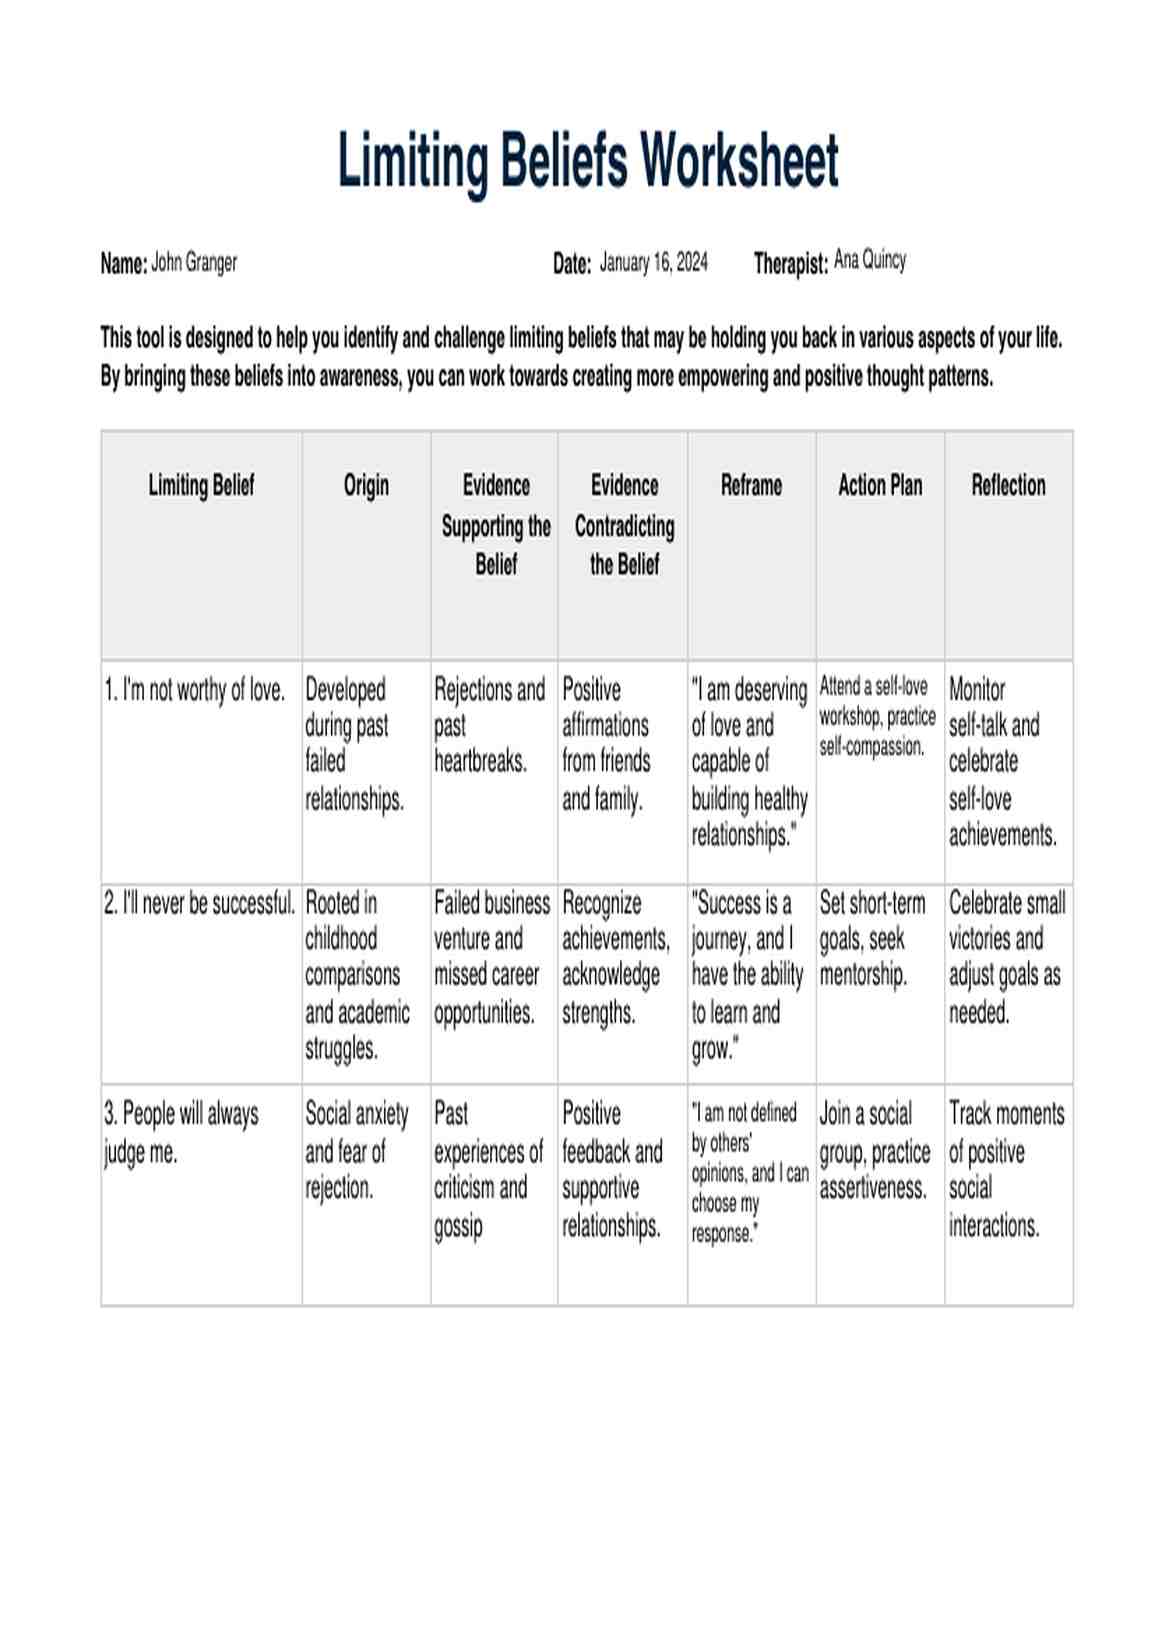 Limiting Beliefs Worksheet PDF Example